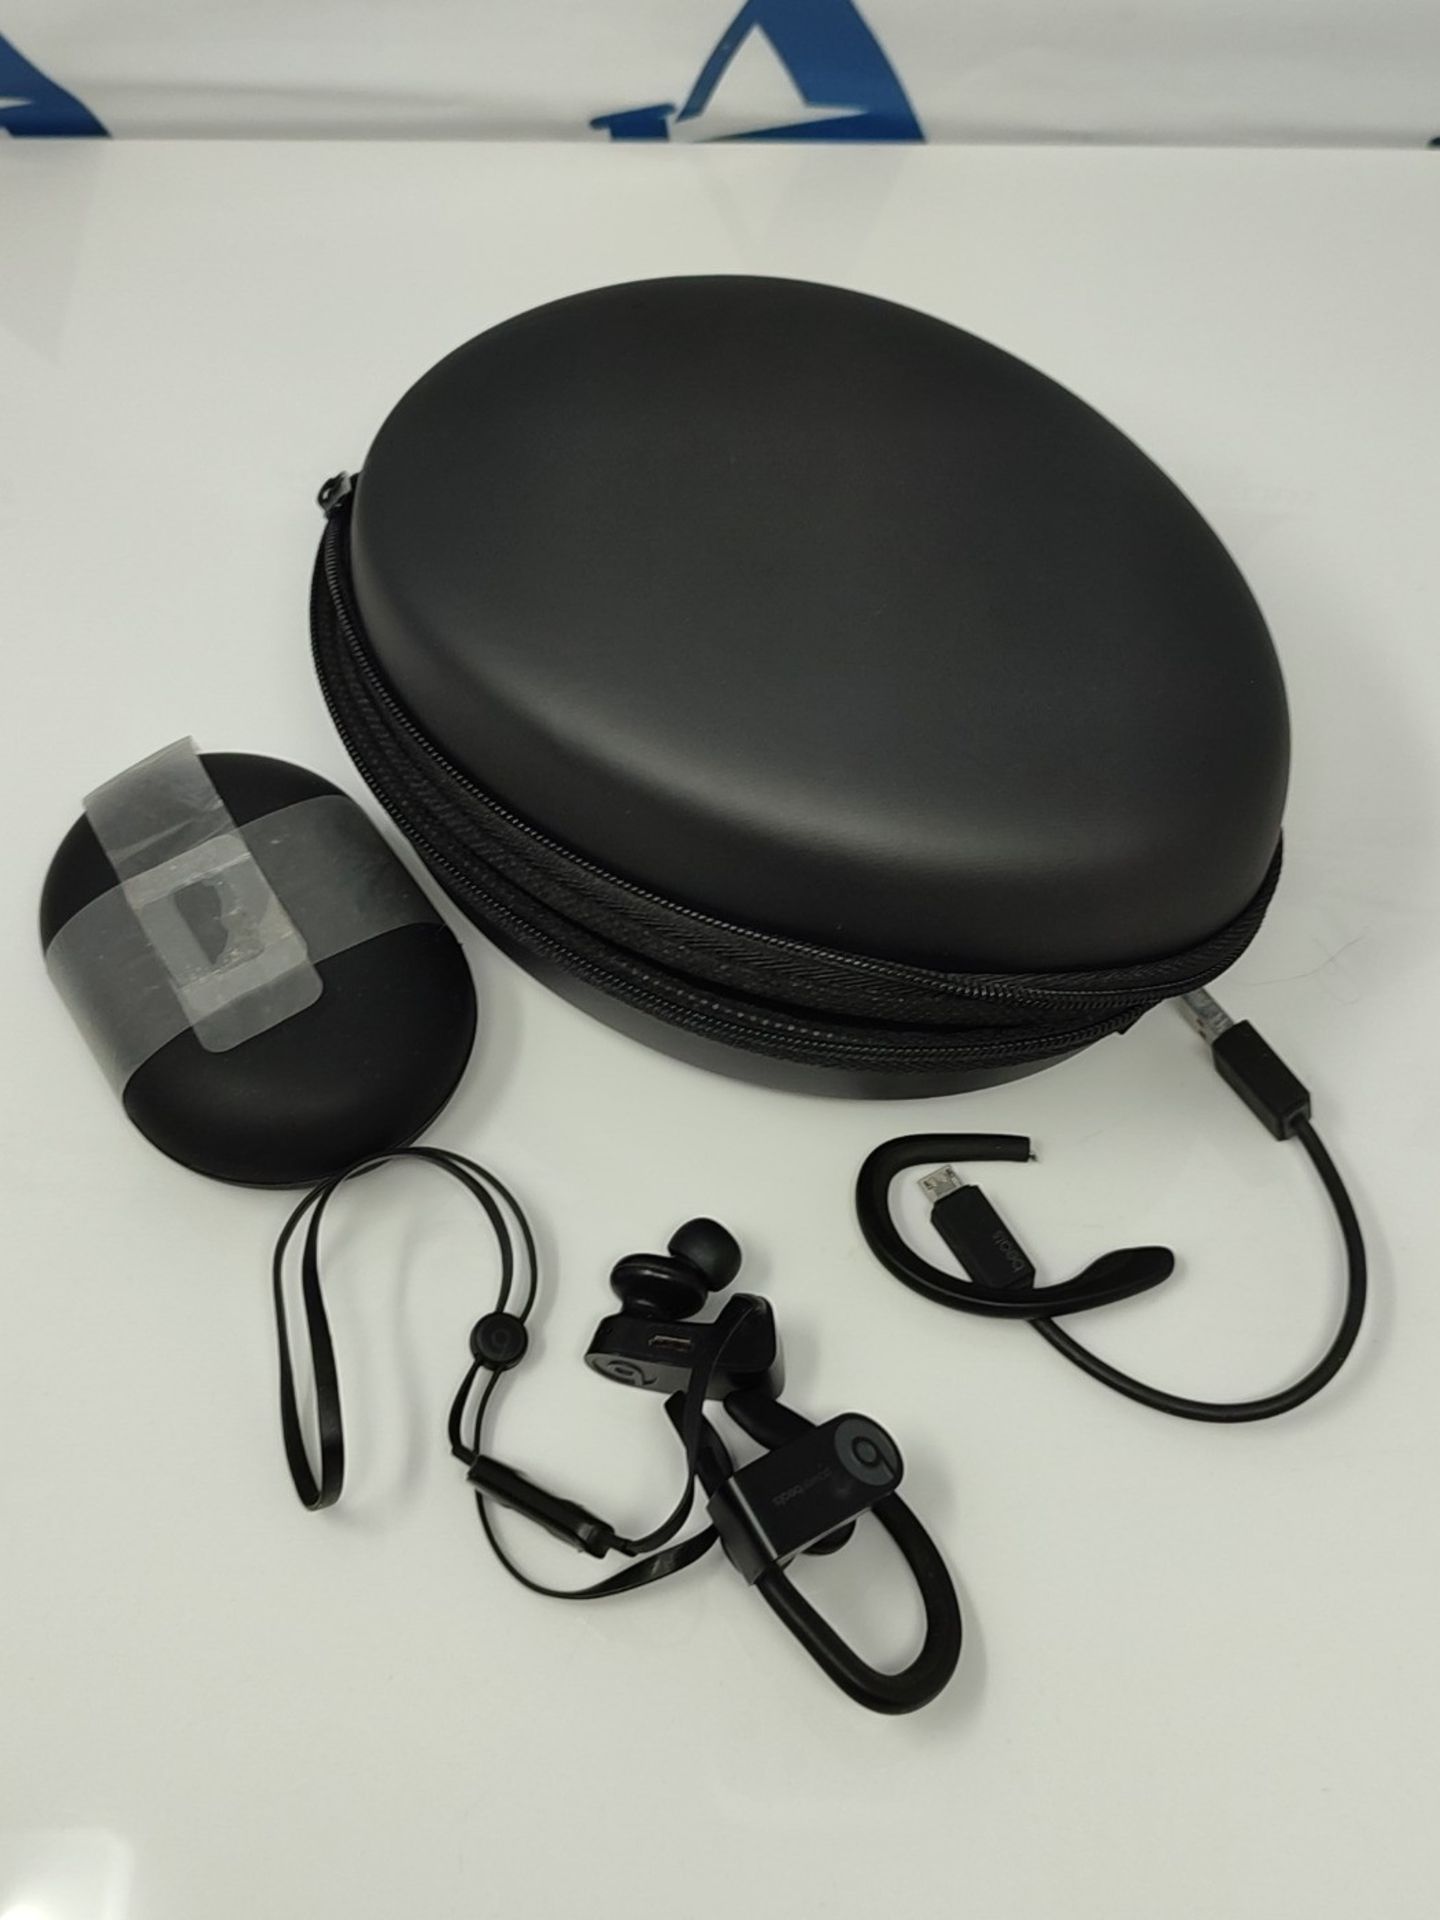 RRP £150.00 Beats Powerbeats3 Wireless Earphones - Black - Image 2 of 2